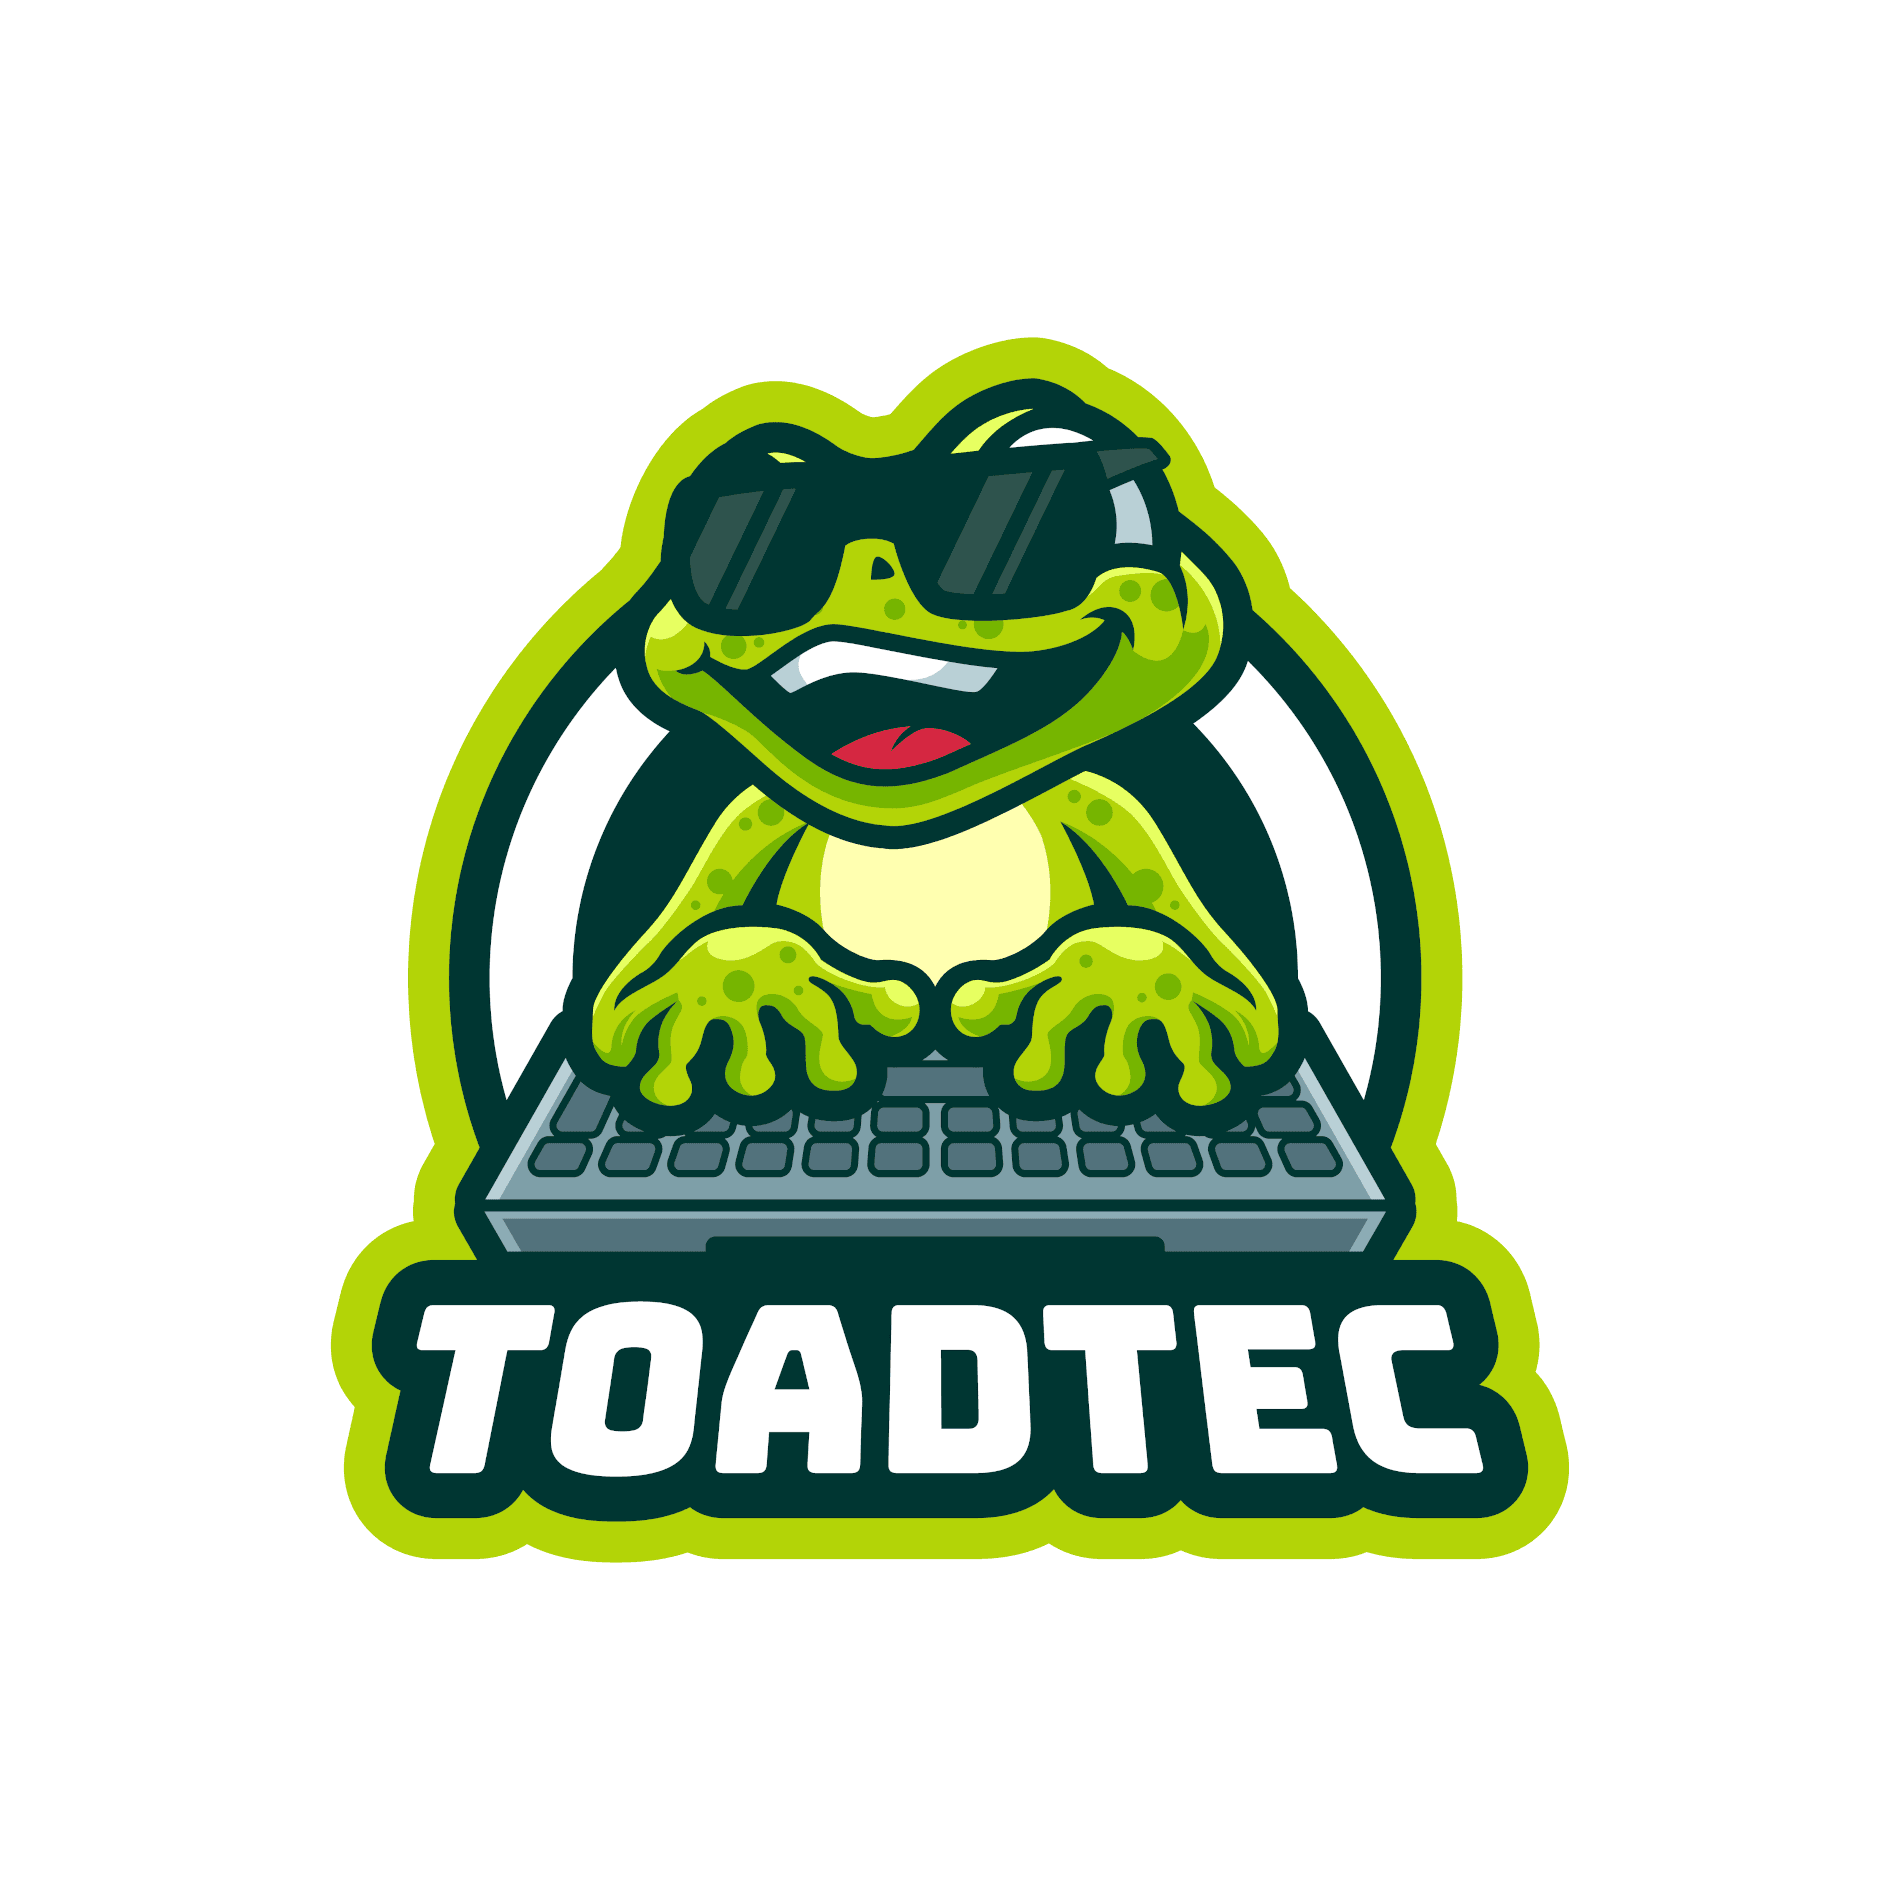 ToadTec